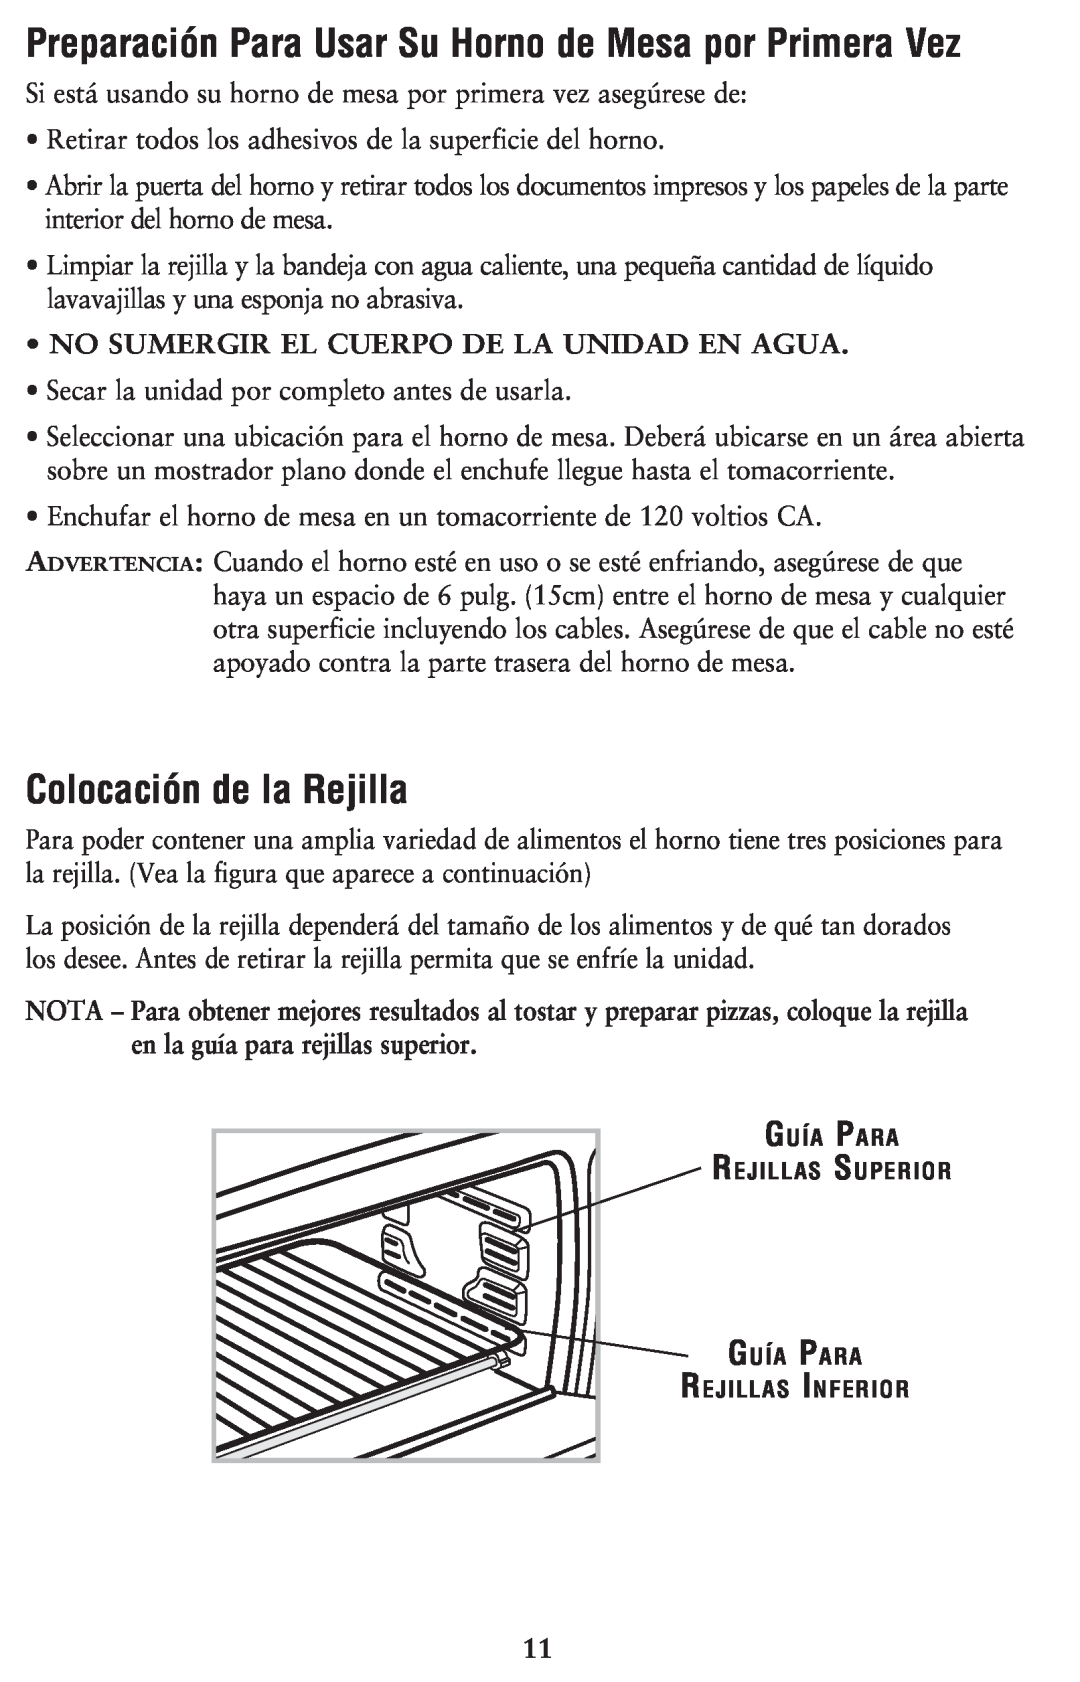 Oster 128263, 6079 user manual Colocación de la Rejilla, Preparación Para Usar Su Horno de Mesa por Primera Vez 